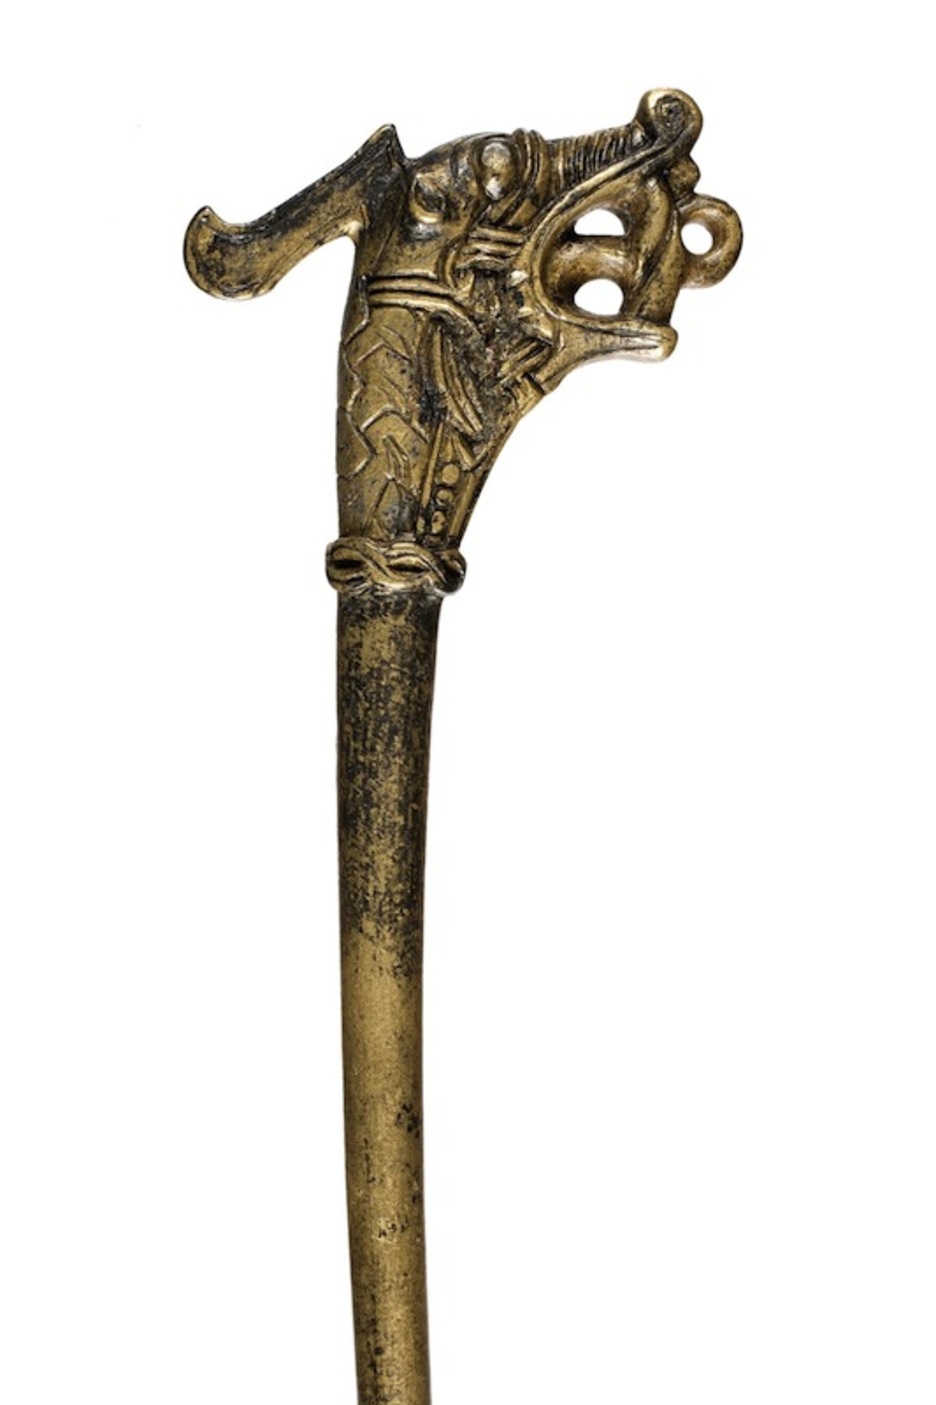 Un pin con la cabeza de un dragón. Tiene 16 centímetros de largo y pertenece al museo arquológico de la ciudad alemana de Schleswig.